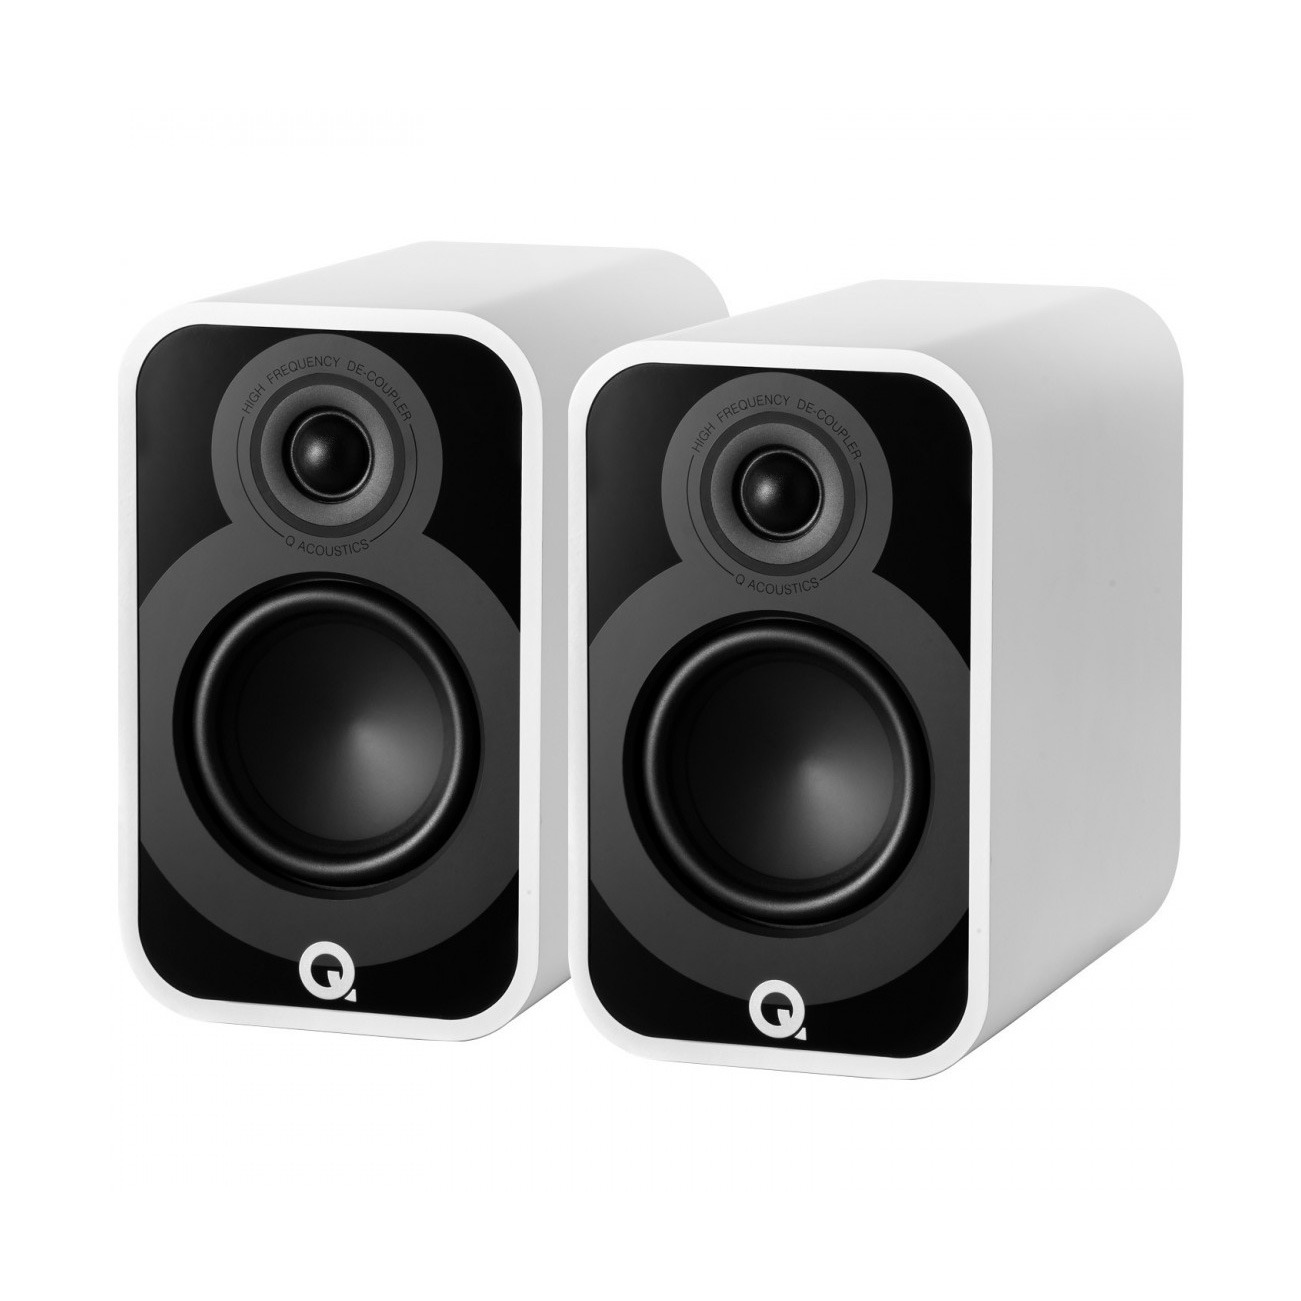 Полочная акустика Q-Acoustics Q5020 (QA5024) Satin White полочная акустика dali oberon 1 c white sound hub compact